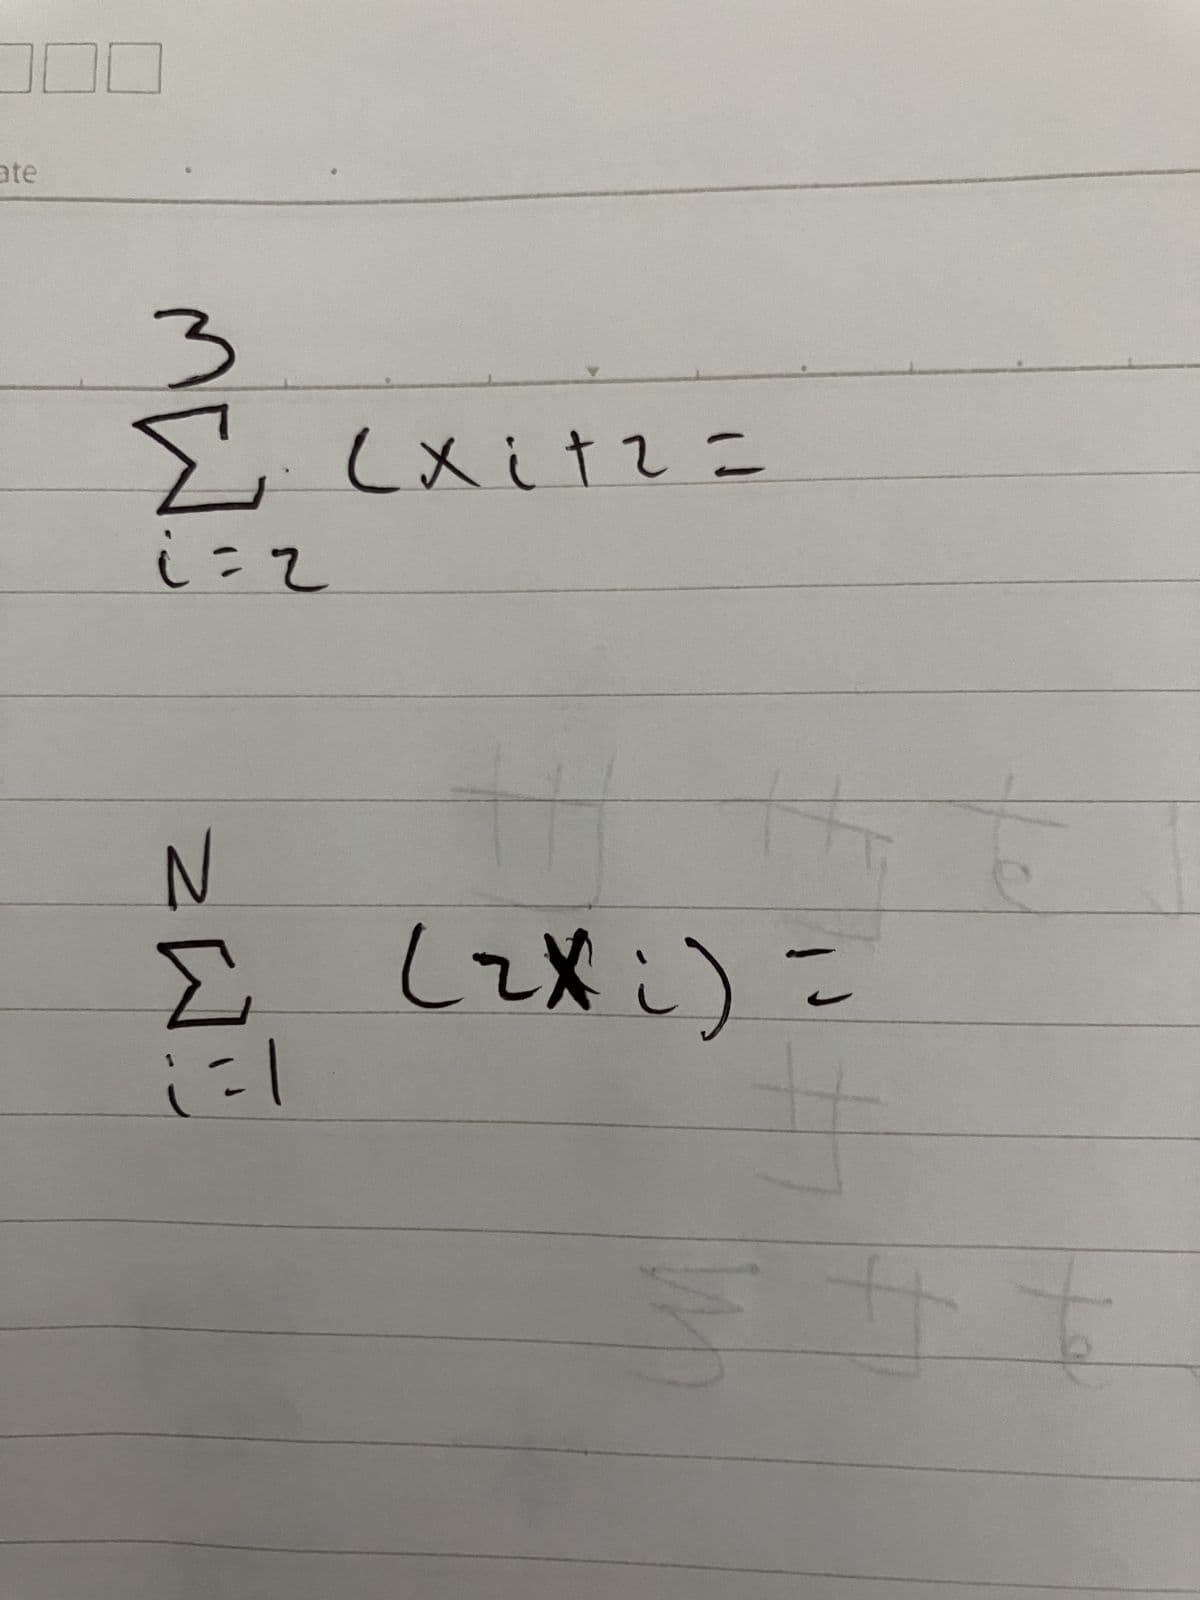 ate
3
Σ (xitz=
i=2
N
Σ (zi) =
1=1
W
+
of